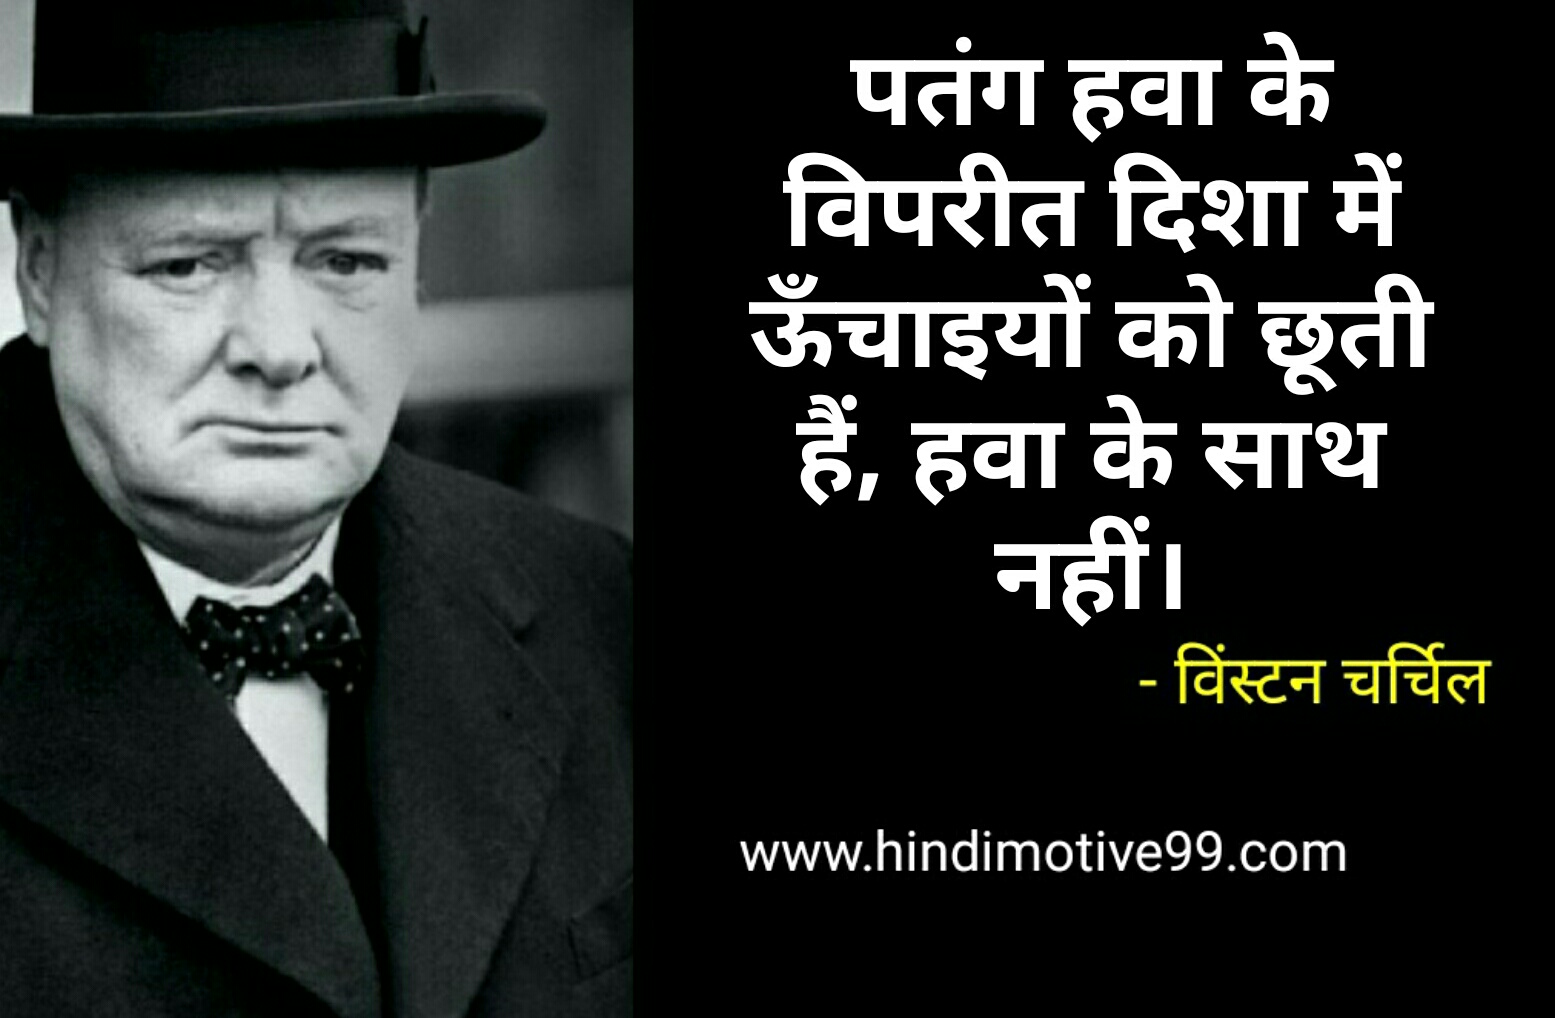 विंस्टन चर्चिल के प्रसिद्ध अनमोल विचार - Winston Churchill quotes in hindi